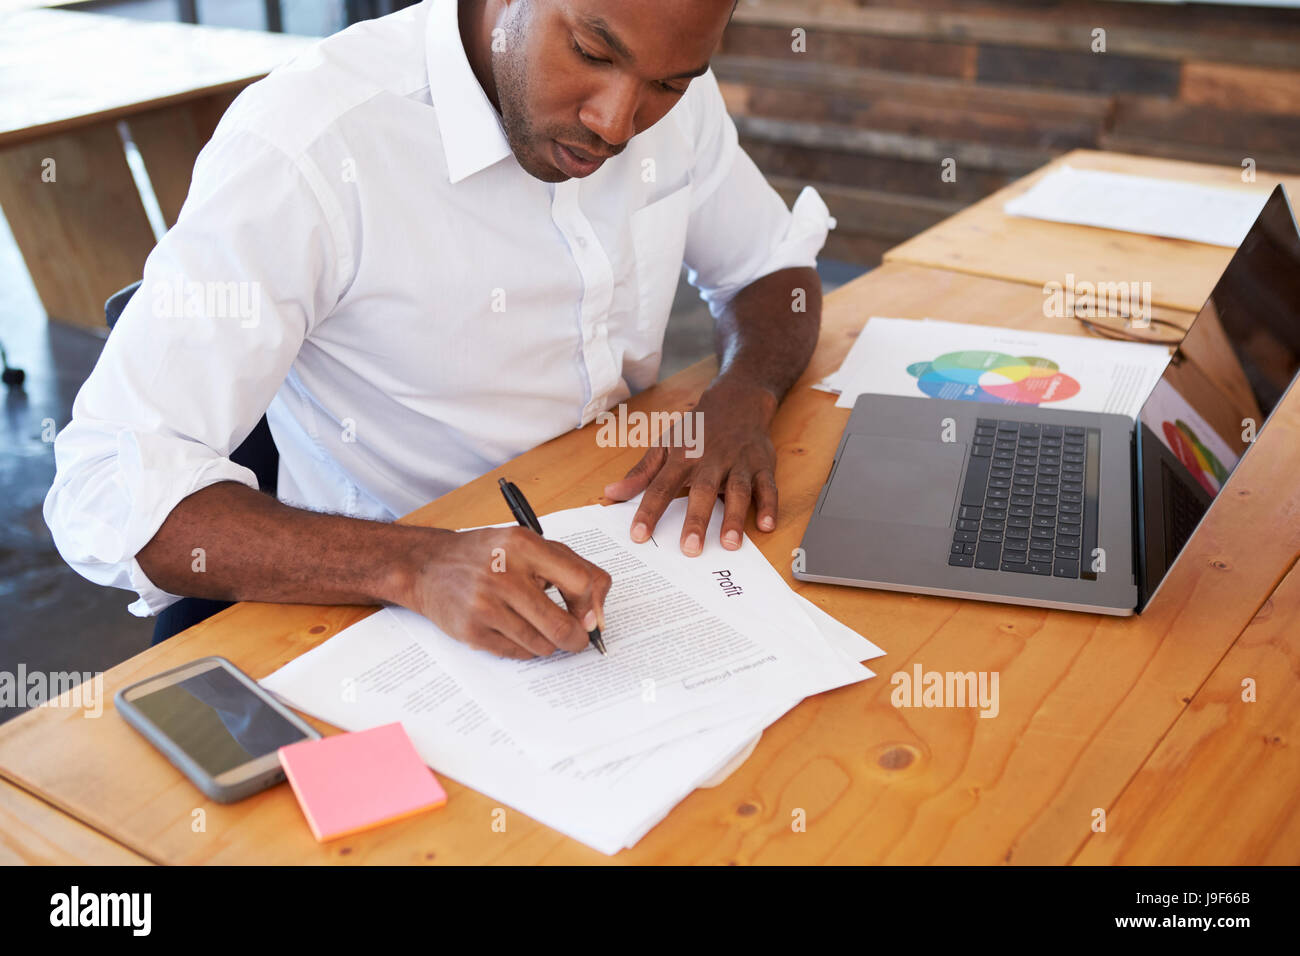 Portrait de jeune homme noir travaillant au bureau bureau Banque D'Images